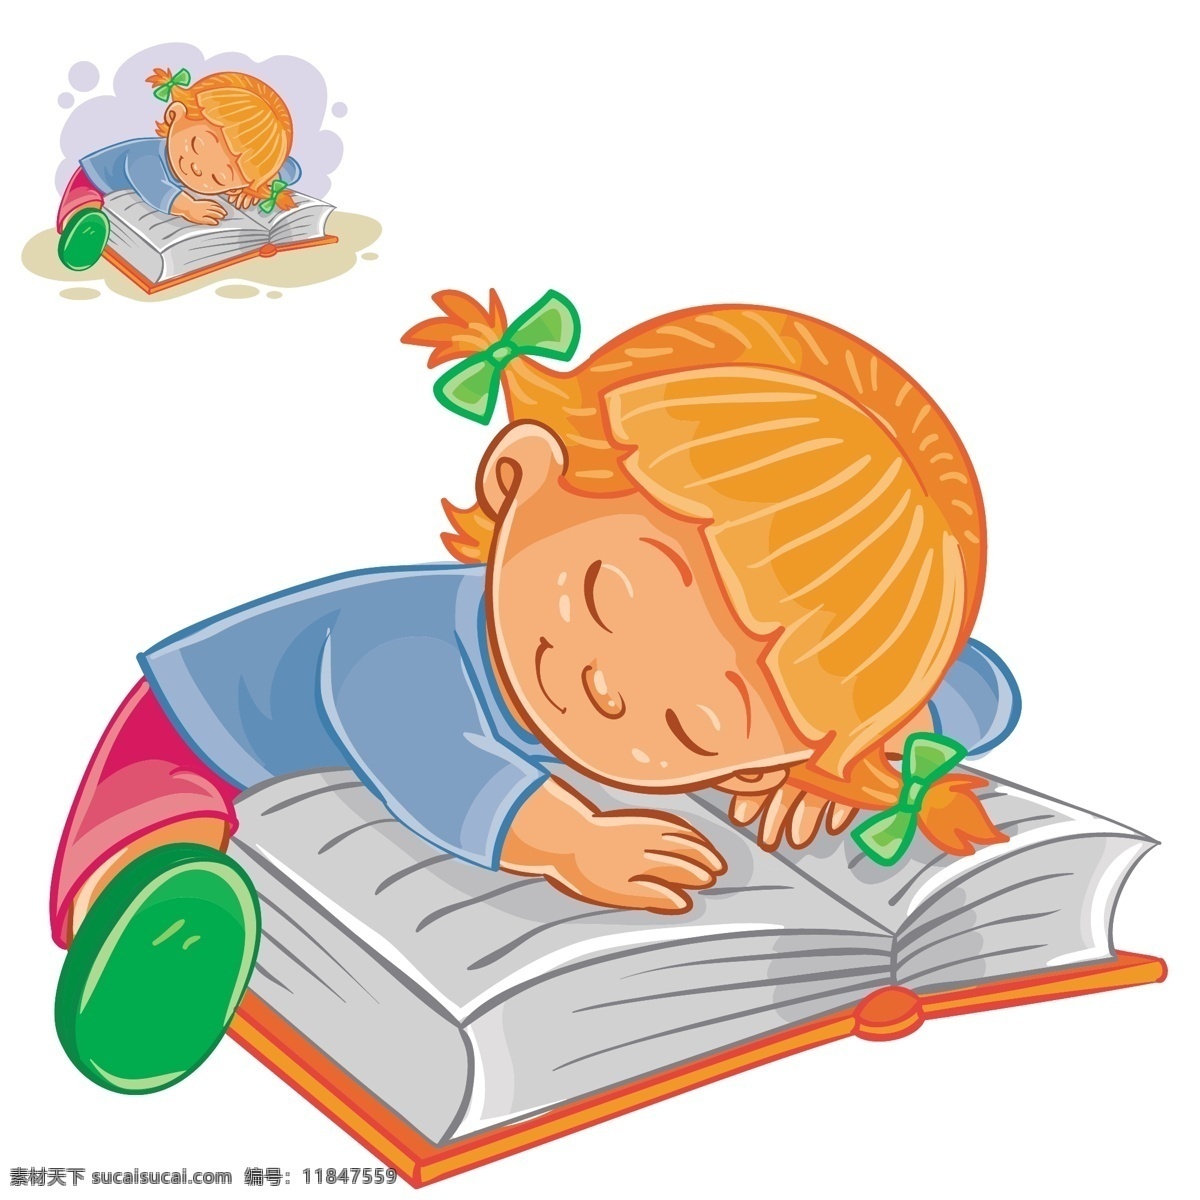 趴在 书本 上 睡觉 小女孩 孩子 学生 翻开 看书 学习 阅读 念书 卡通儿童 漫画 插画 动漫动画 动漫人物